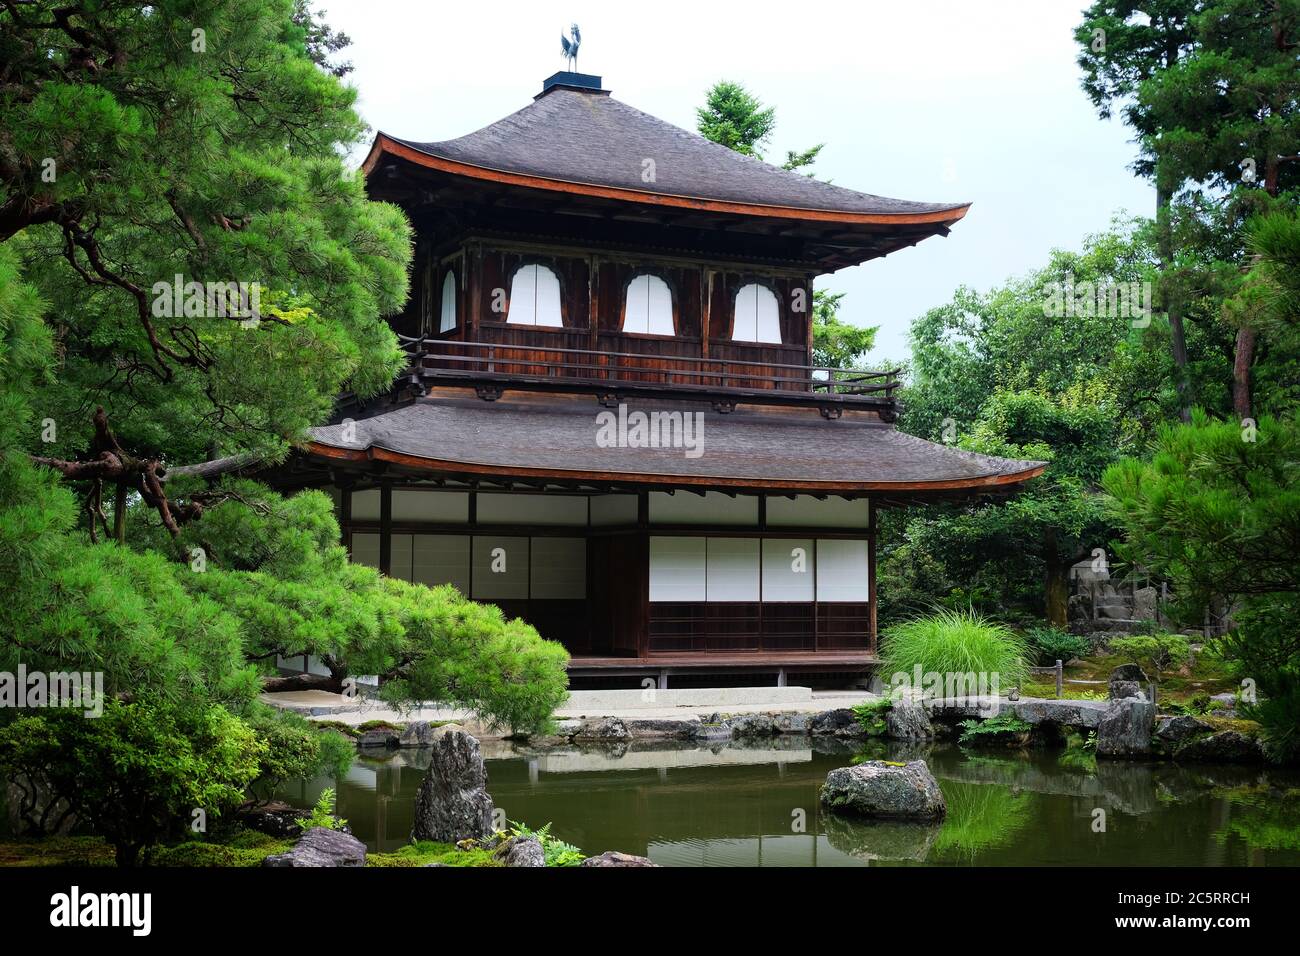 Le kannonden à Jisho-ji, communément appelé Pavillon d'argent (Ginkaku-ji). Un temple bouddhiste Zen à Kyoto, Japon. Banque D'Images